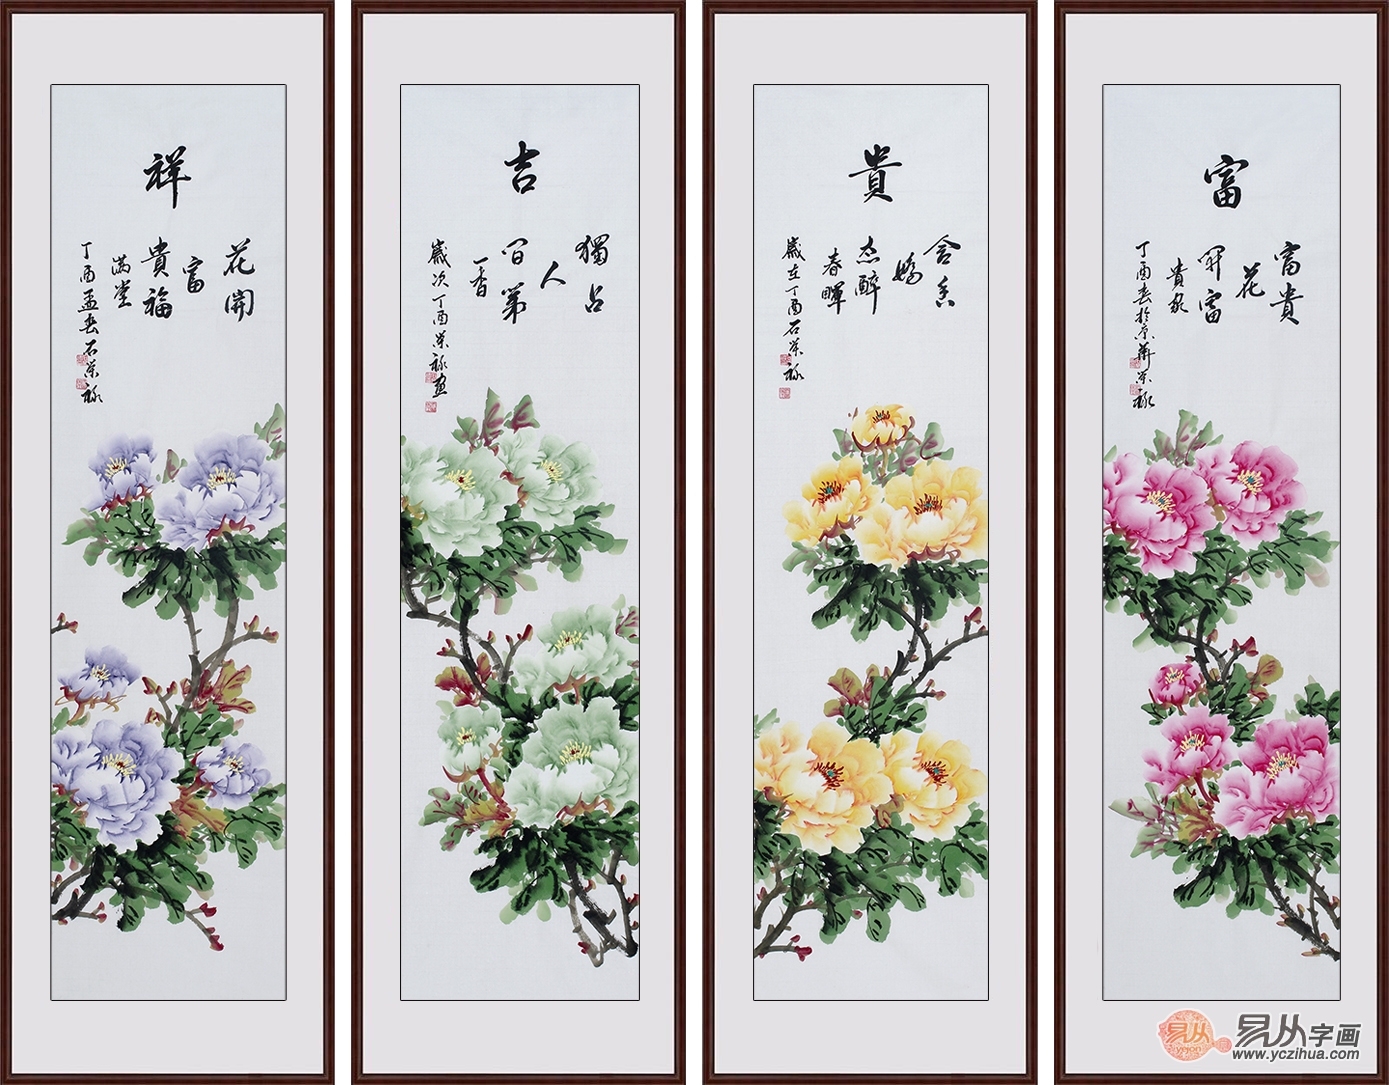 石荣禄最新牡丹四条屏《富贵吉祥》作品来自:易从网